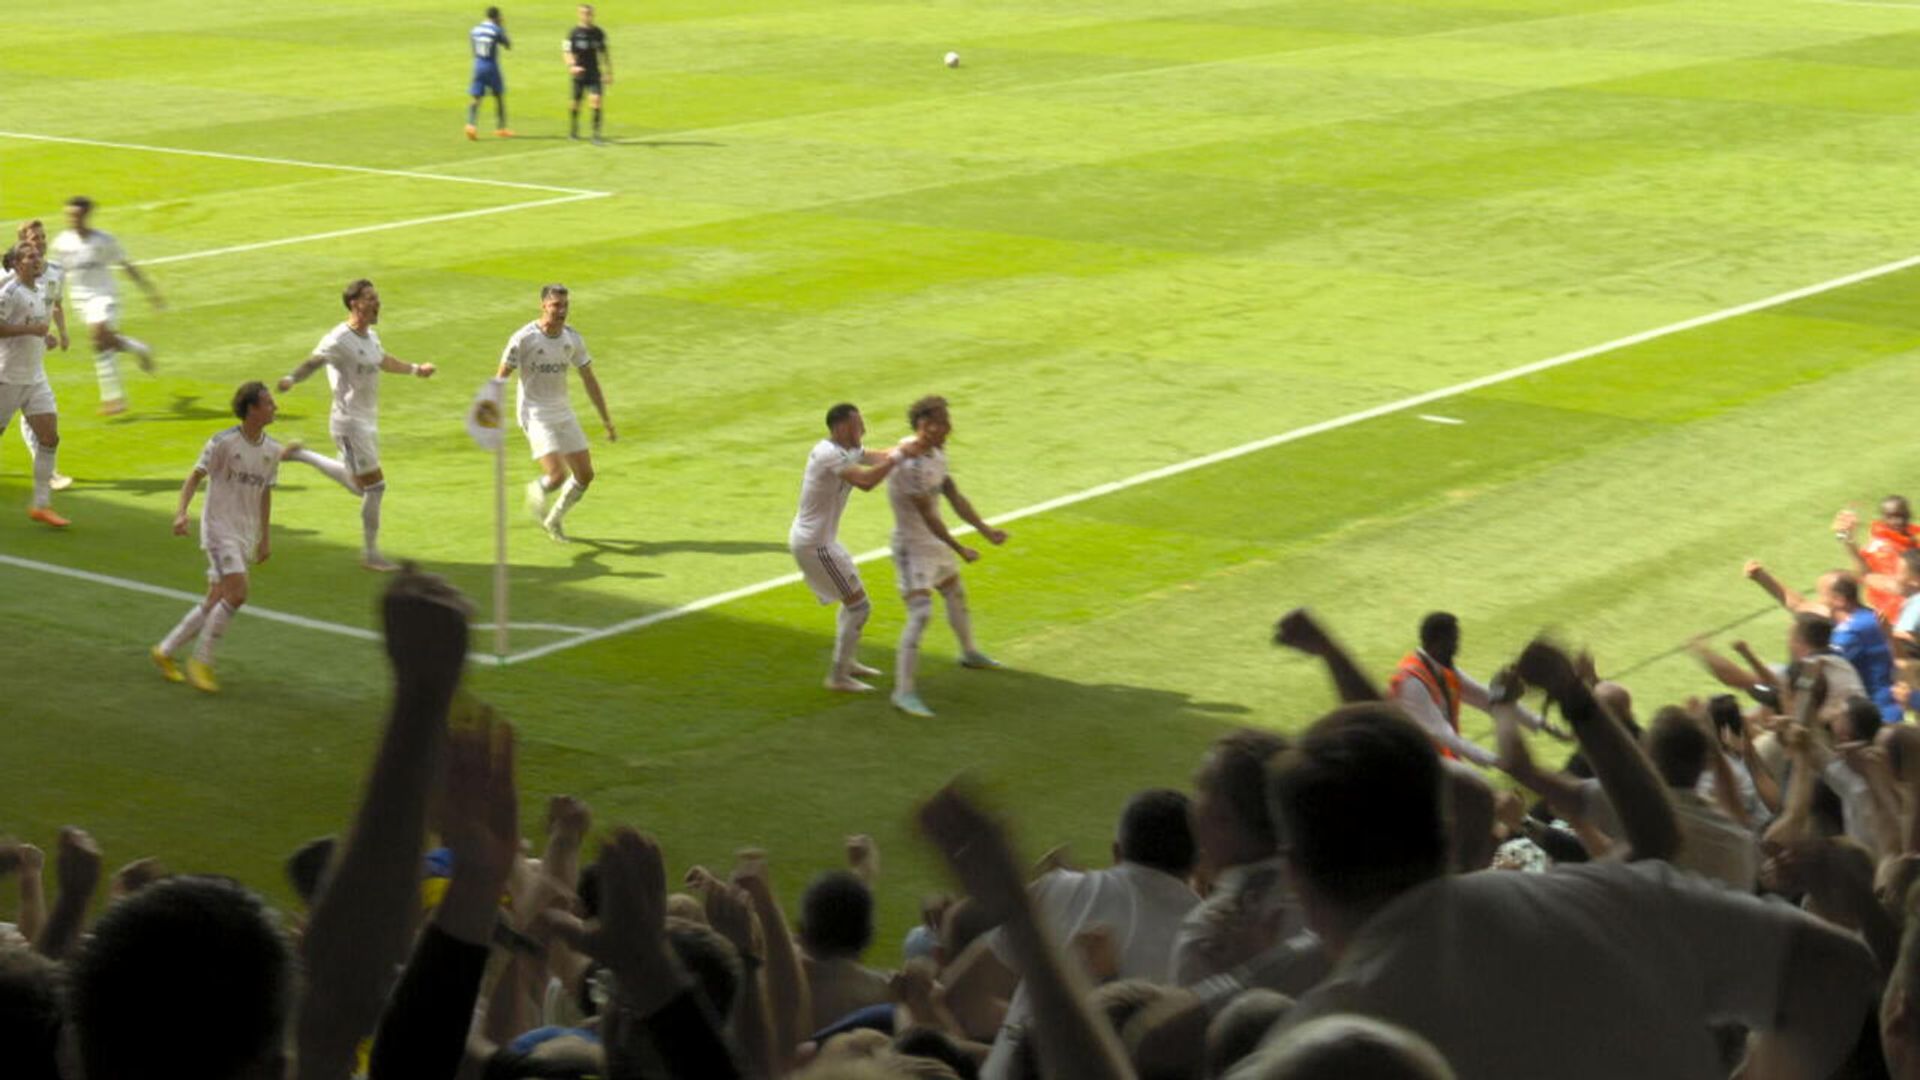 Rodrigo langsung menambah gol kedua untuk Leeds